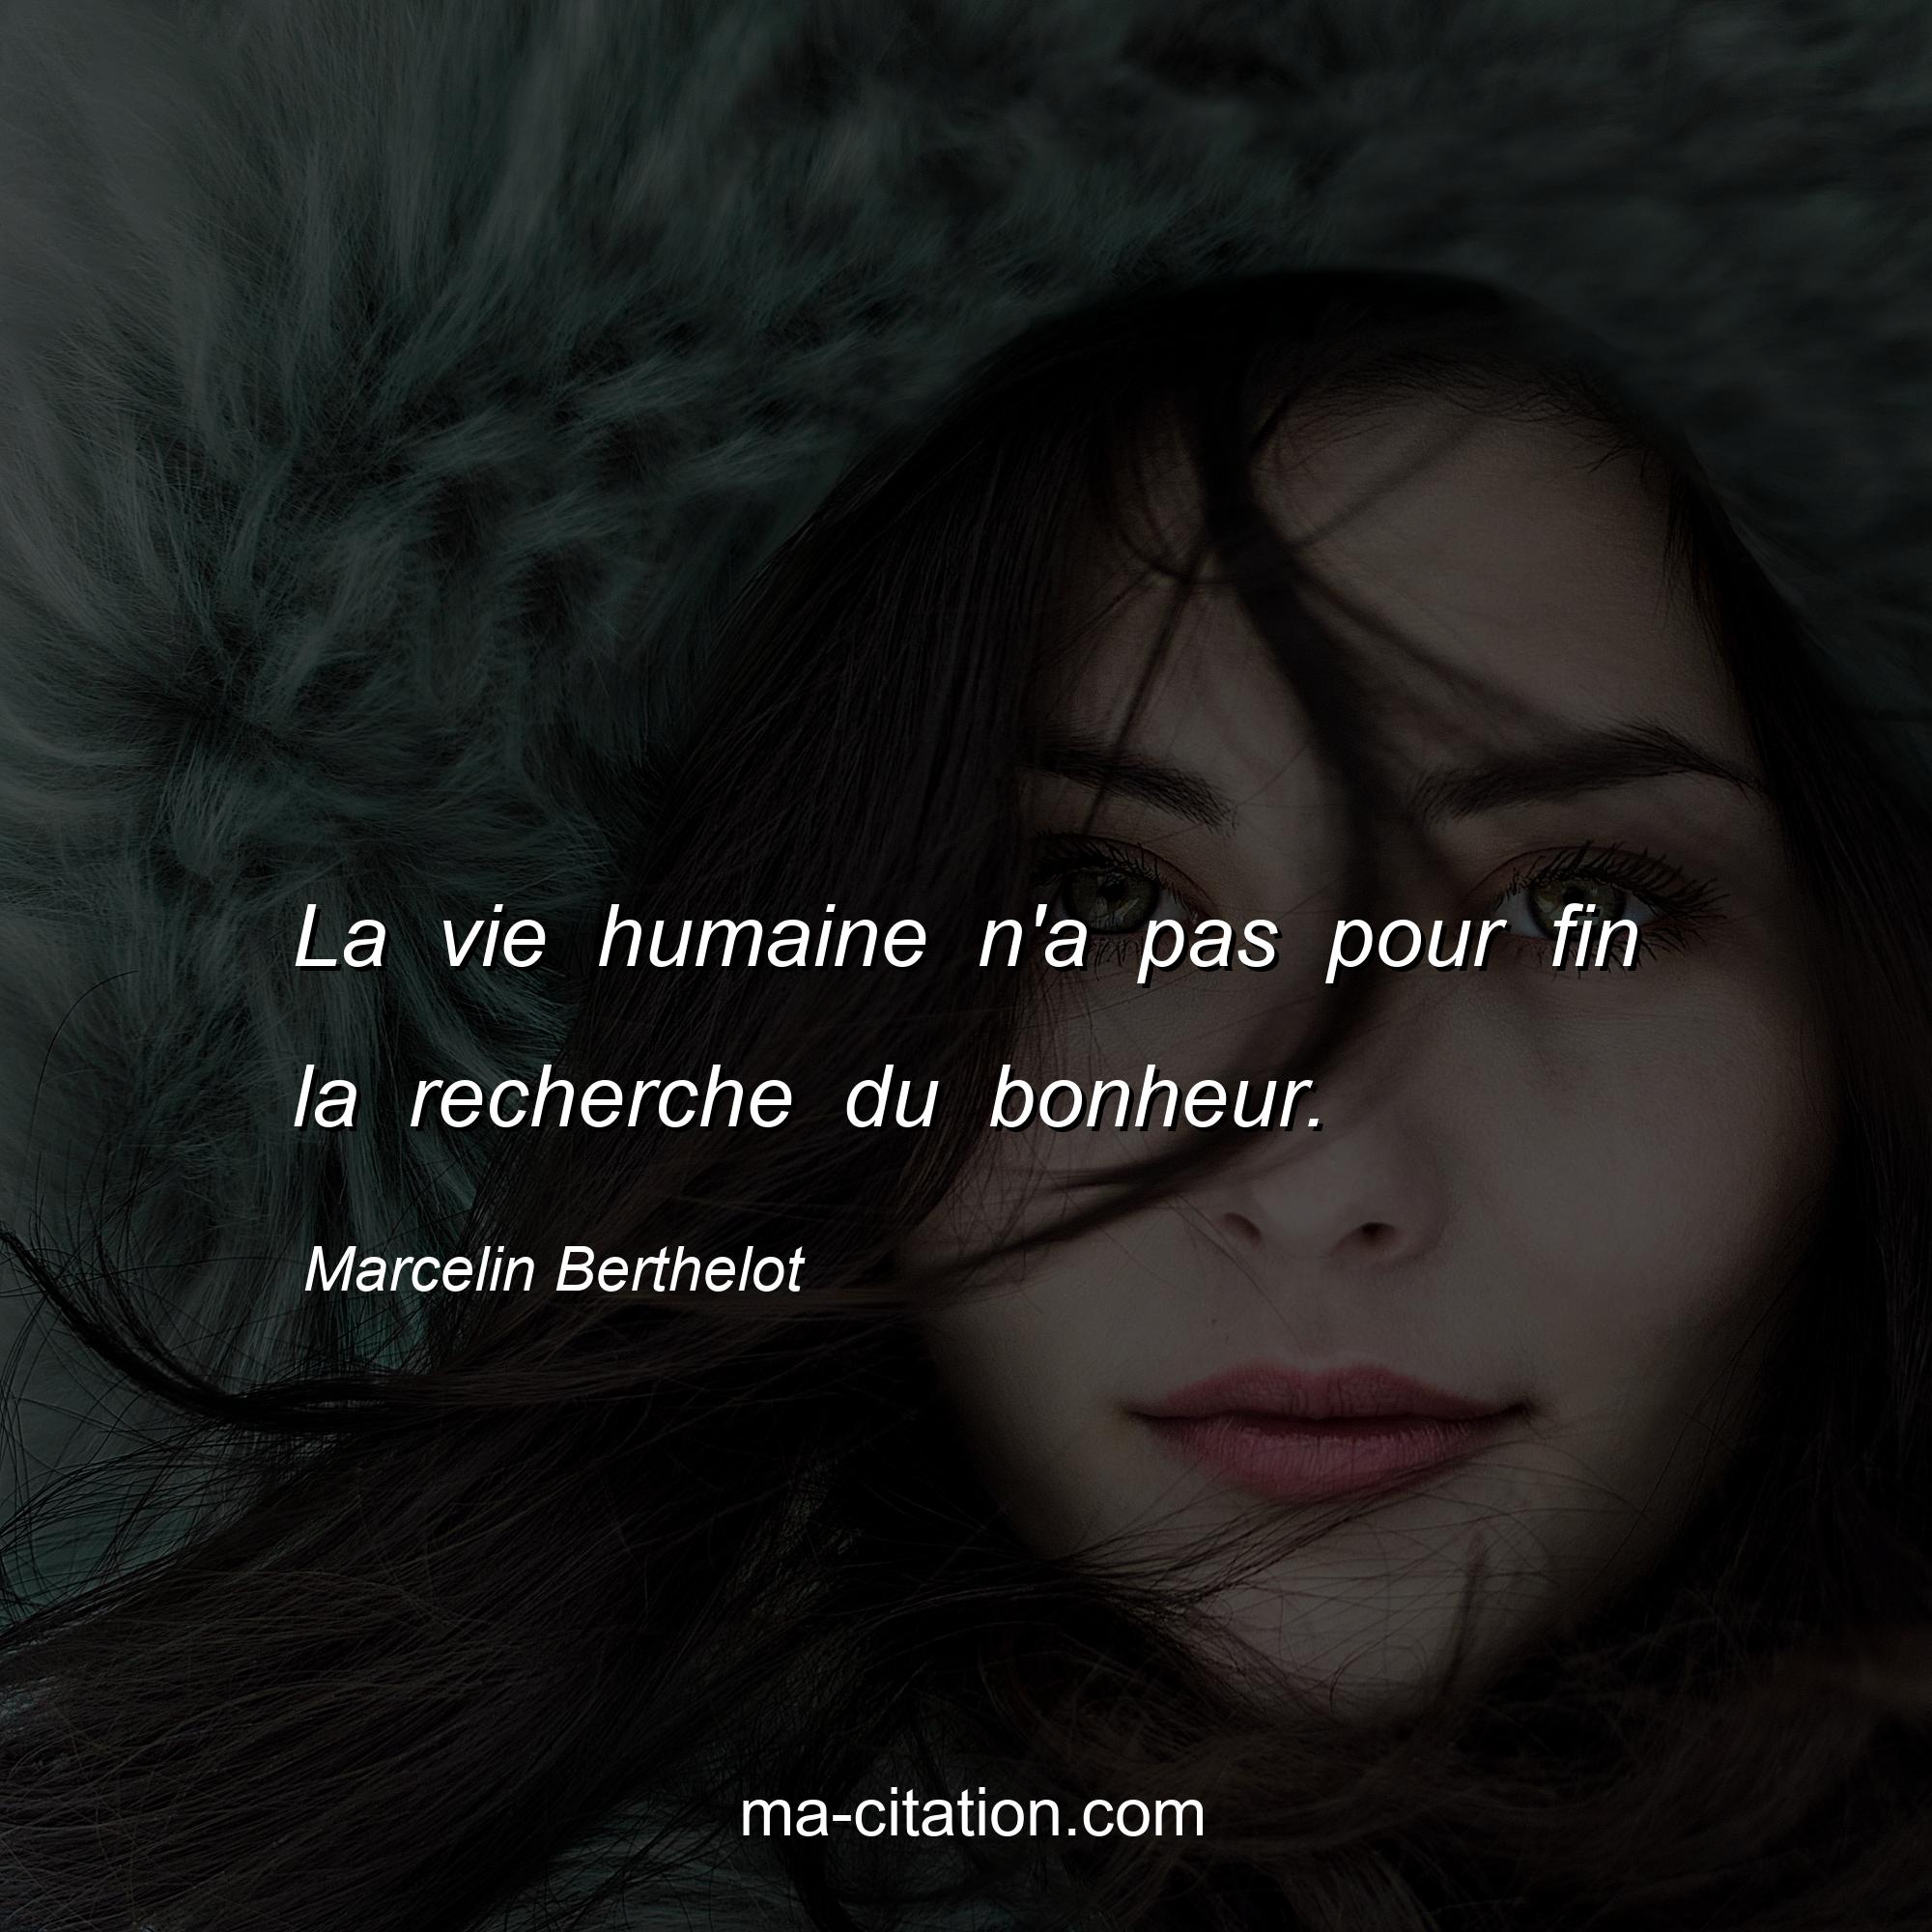 Marcelin Berthelot : La vie humaine n'a pas pour fin la recherche du bonheur.